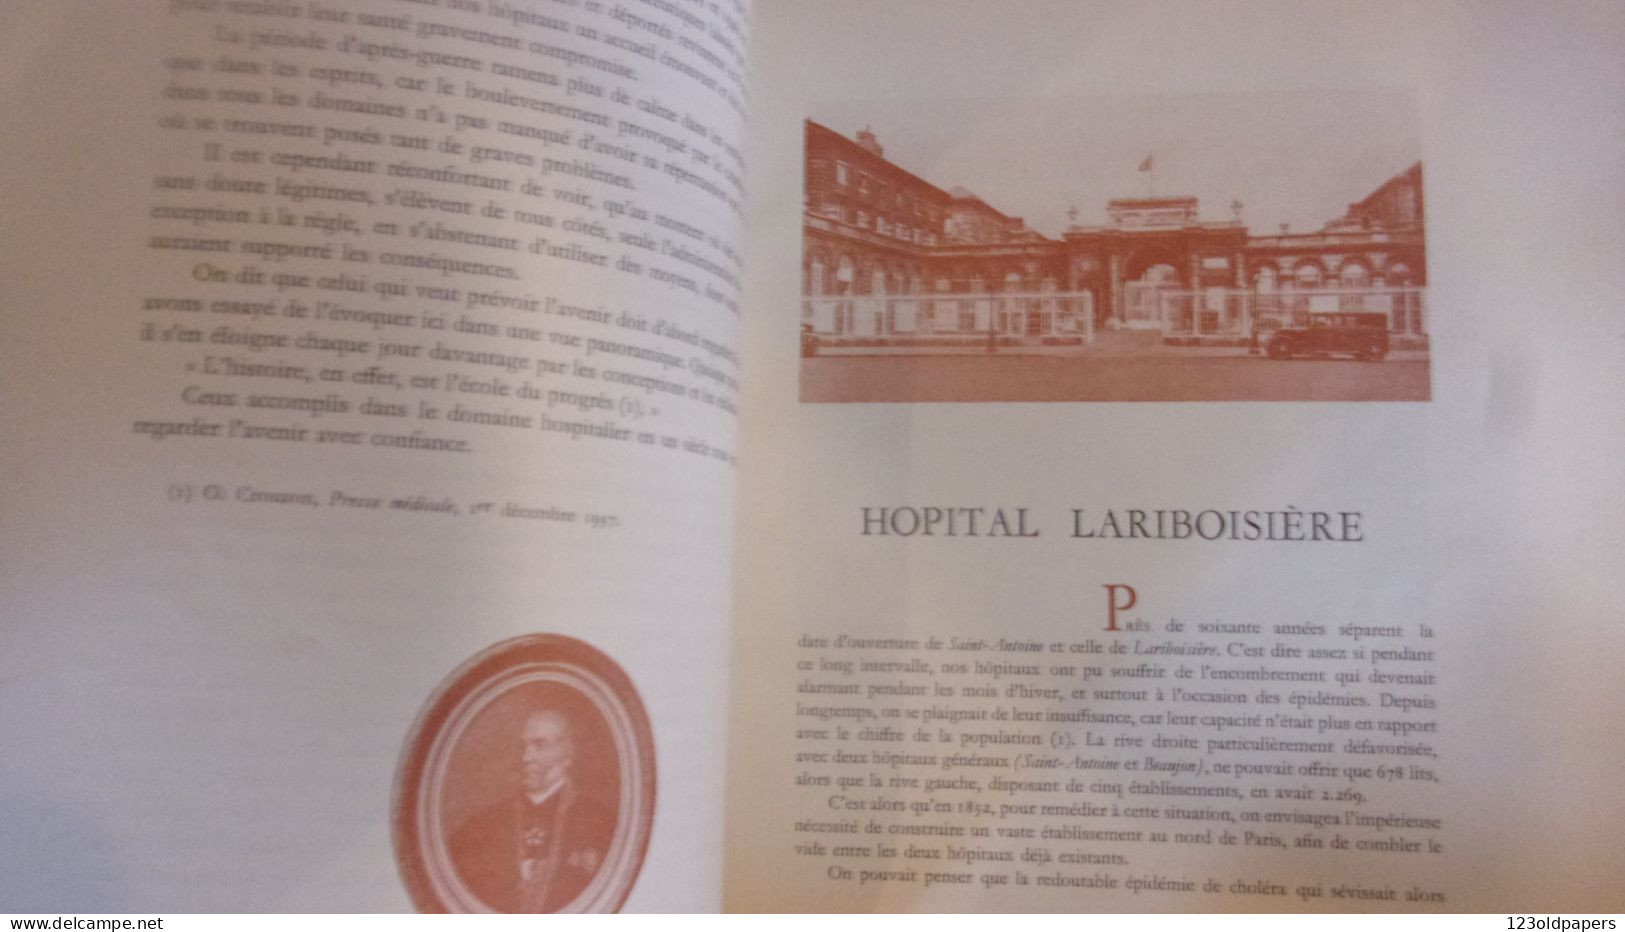 VALLERY RADOT UN SIECLE D HISTOIRE HOSPITALIERE NOS HOPITAUX PARISIENS 1948 EDIT PAUL DUPONT - Wissenschaft